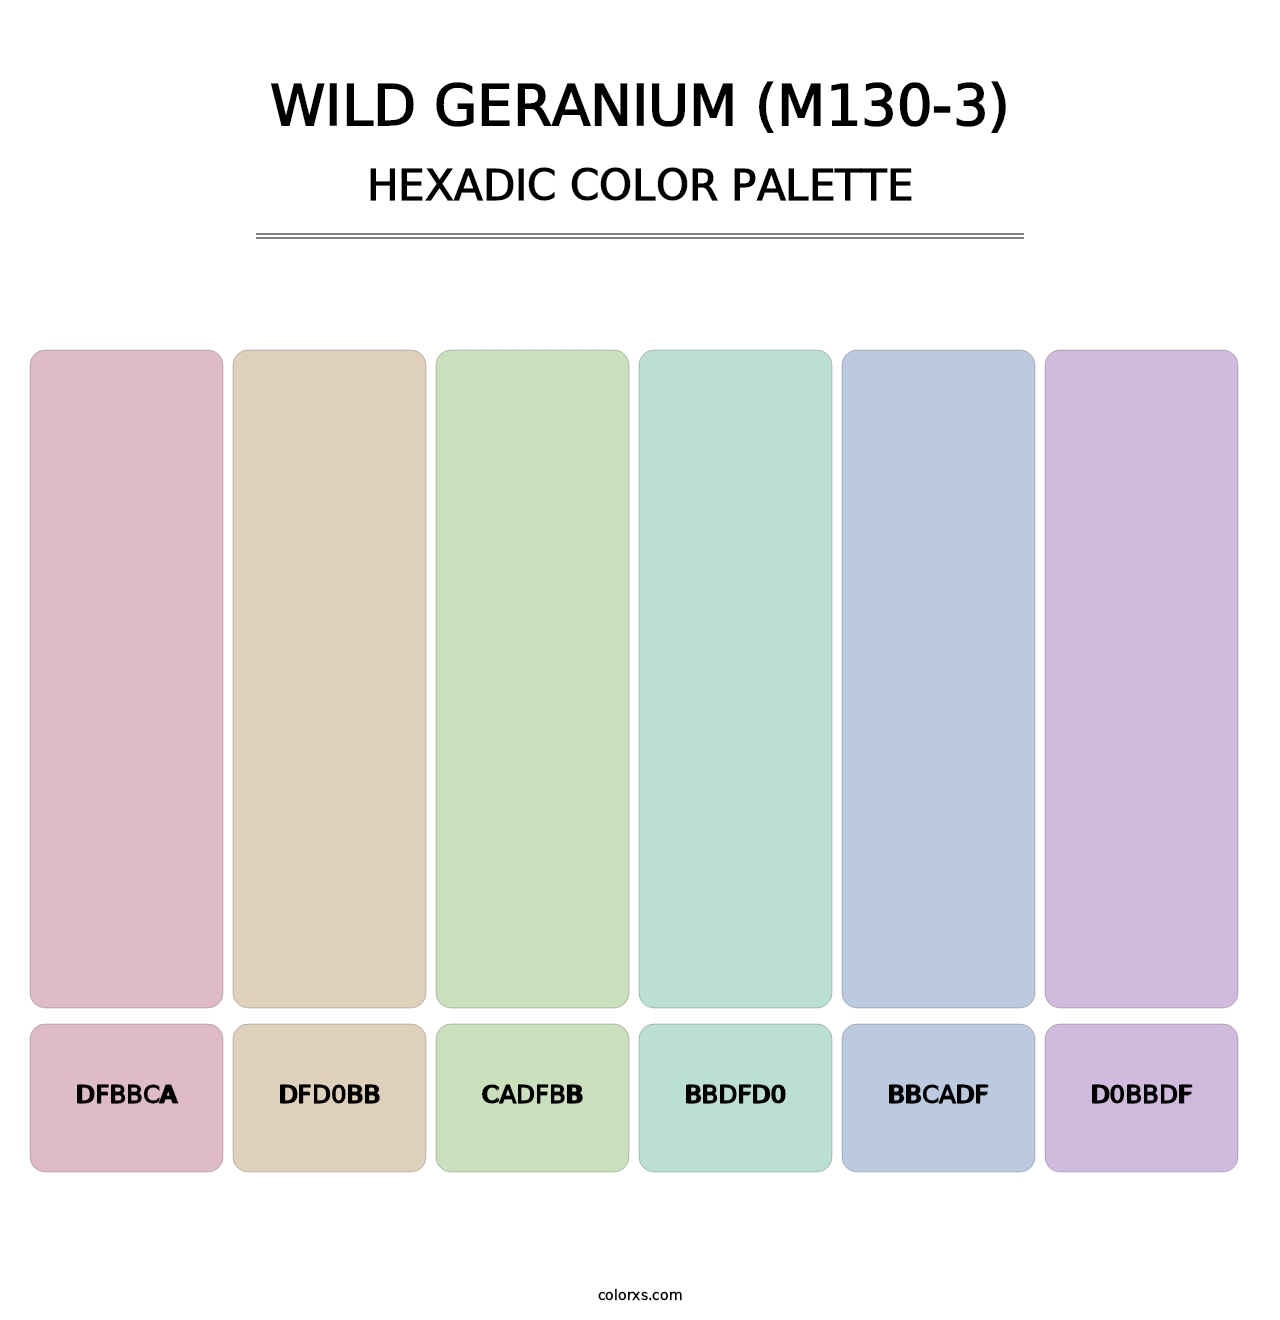 Wild Geranium (M130-3) - Hexadic Color Palette